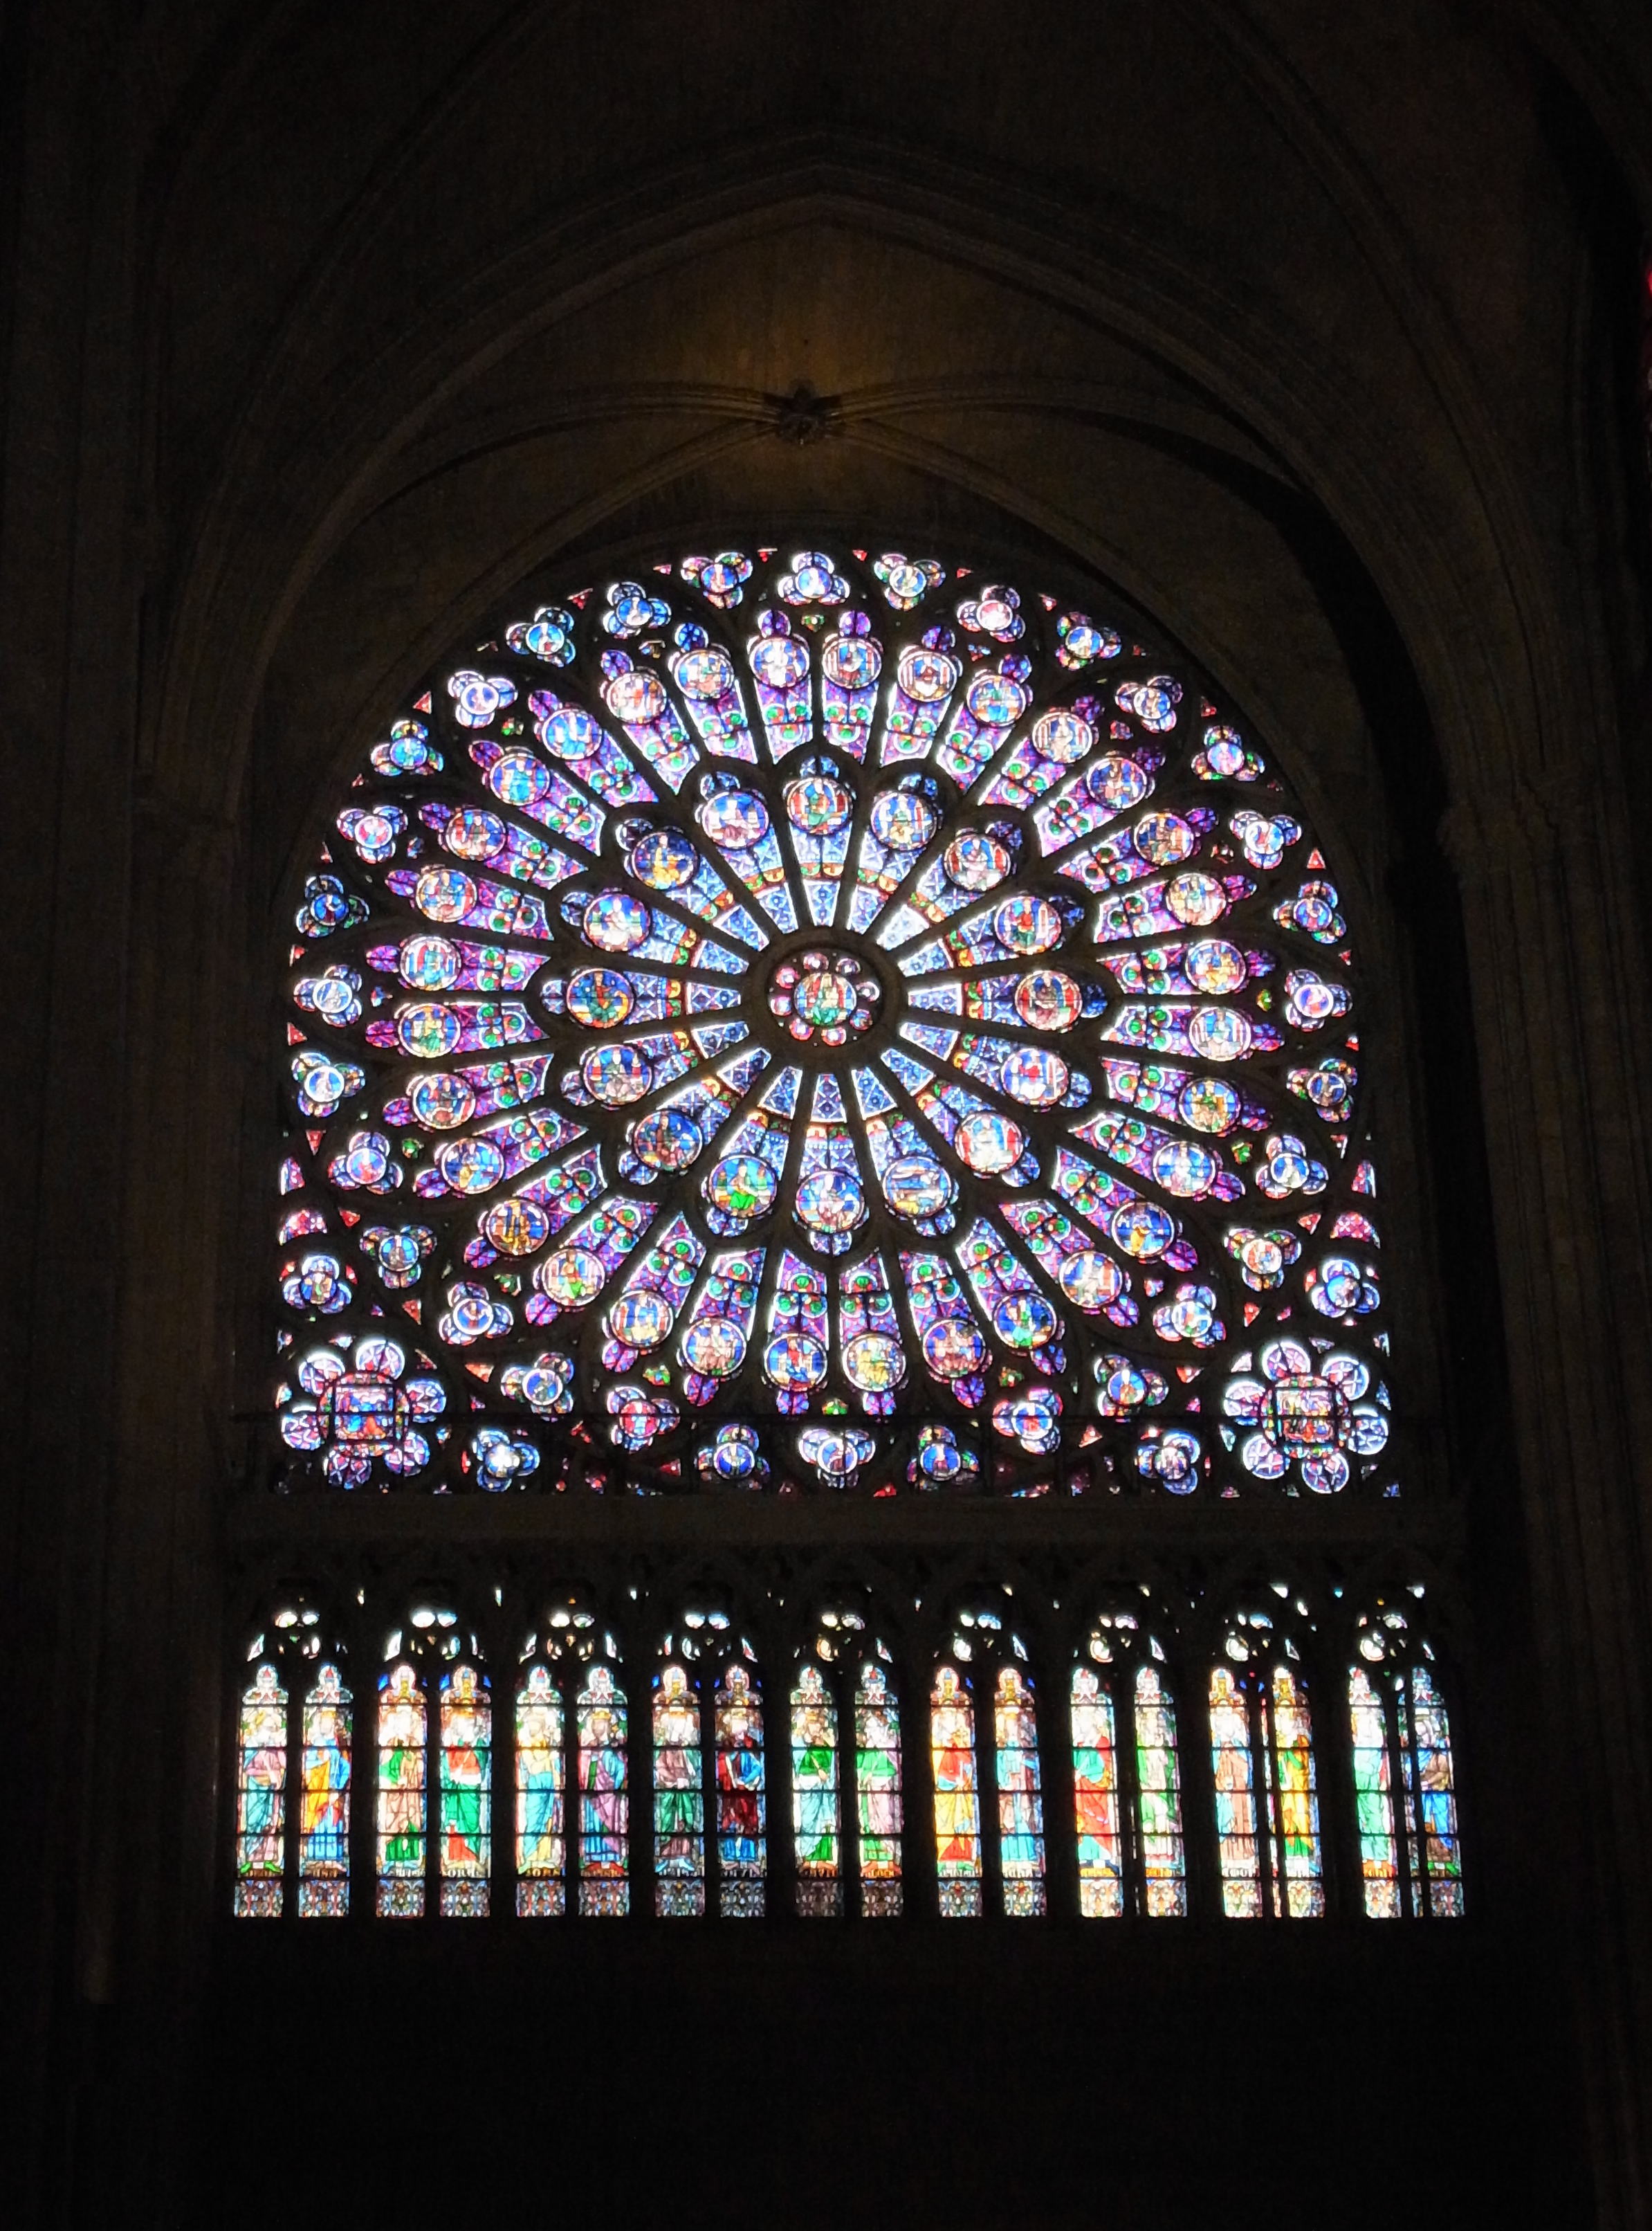 La rose nord de Notre-Dame Cathedral in Paris